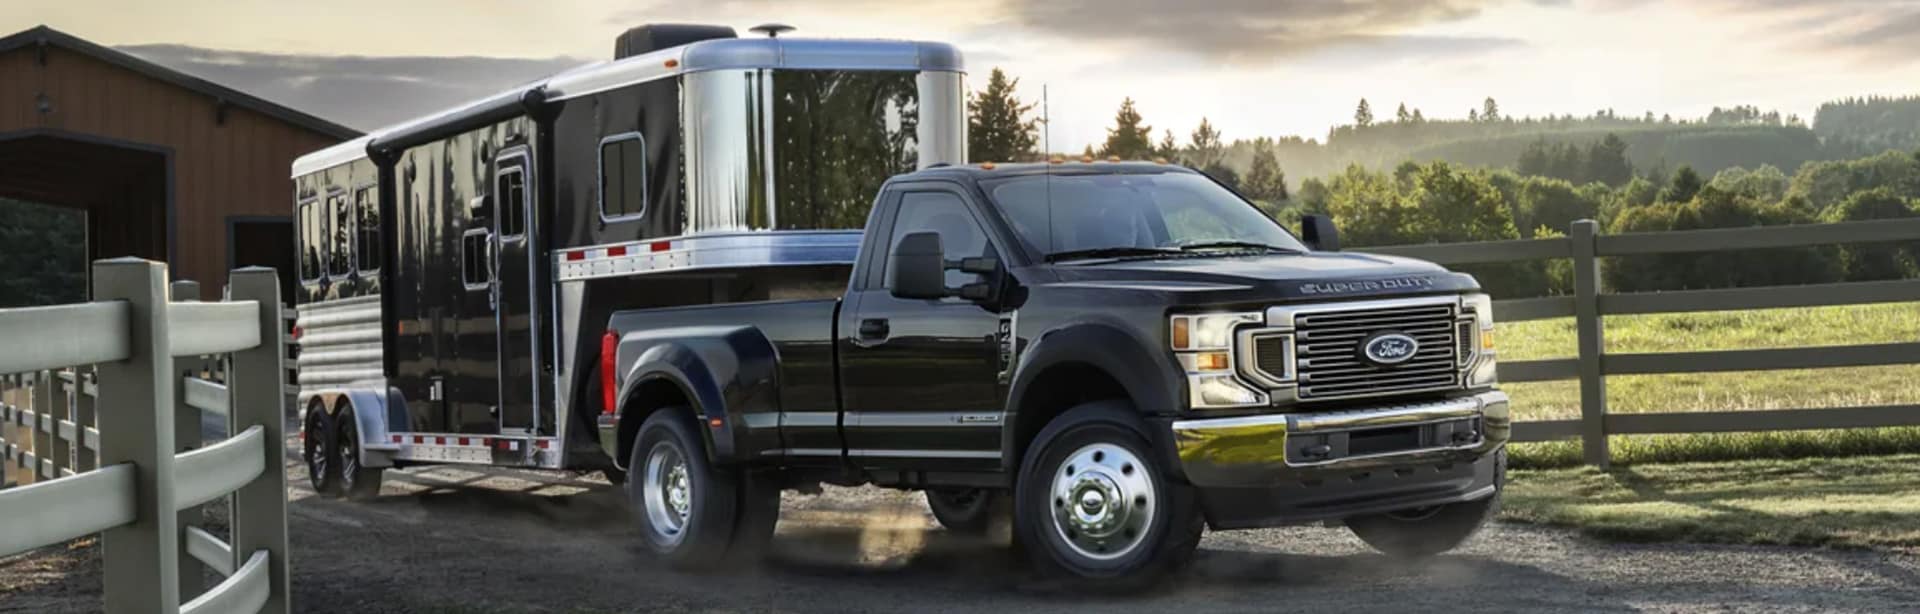 Ford PowerStroke Diesel Truck Service